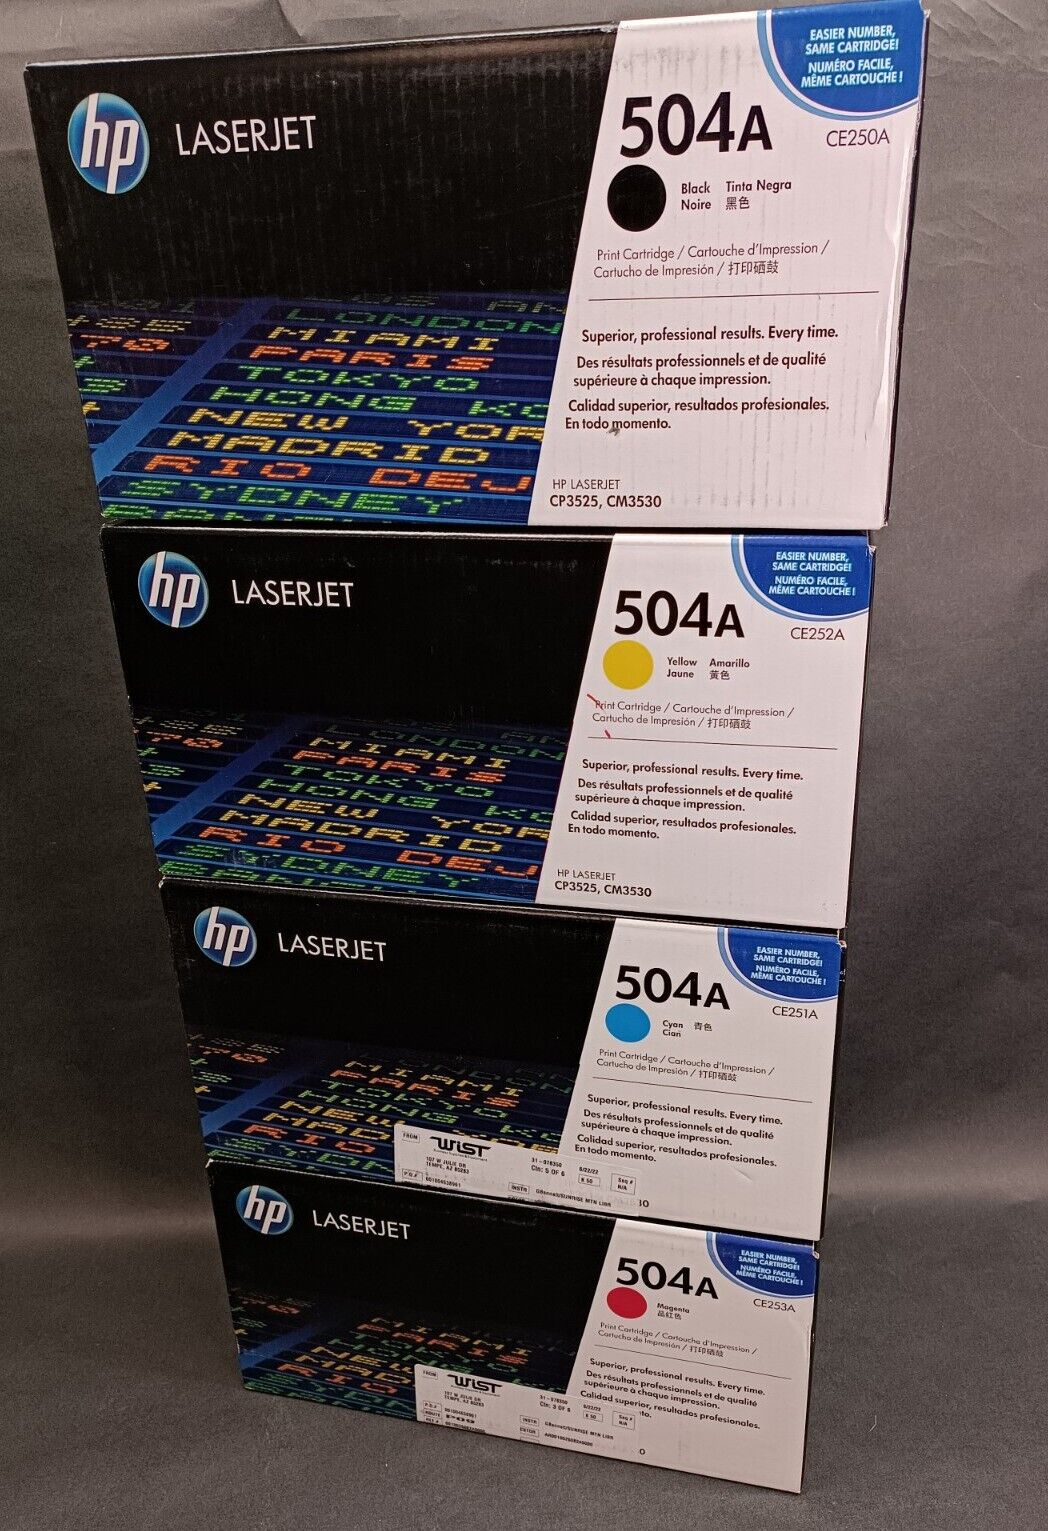 HP LASERJET 504A CE250A,CE251A,CE252A,CE253A Toner Cartridges Set (C,Y,M,K), New